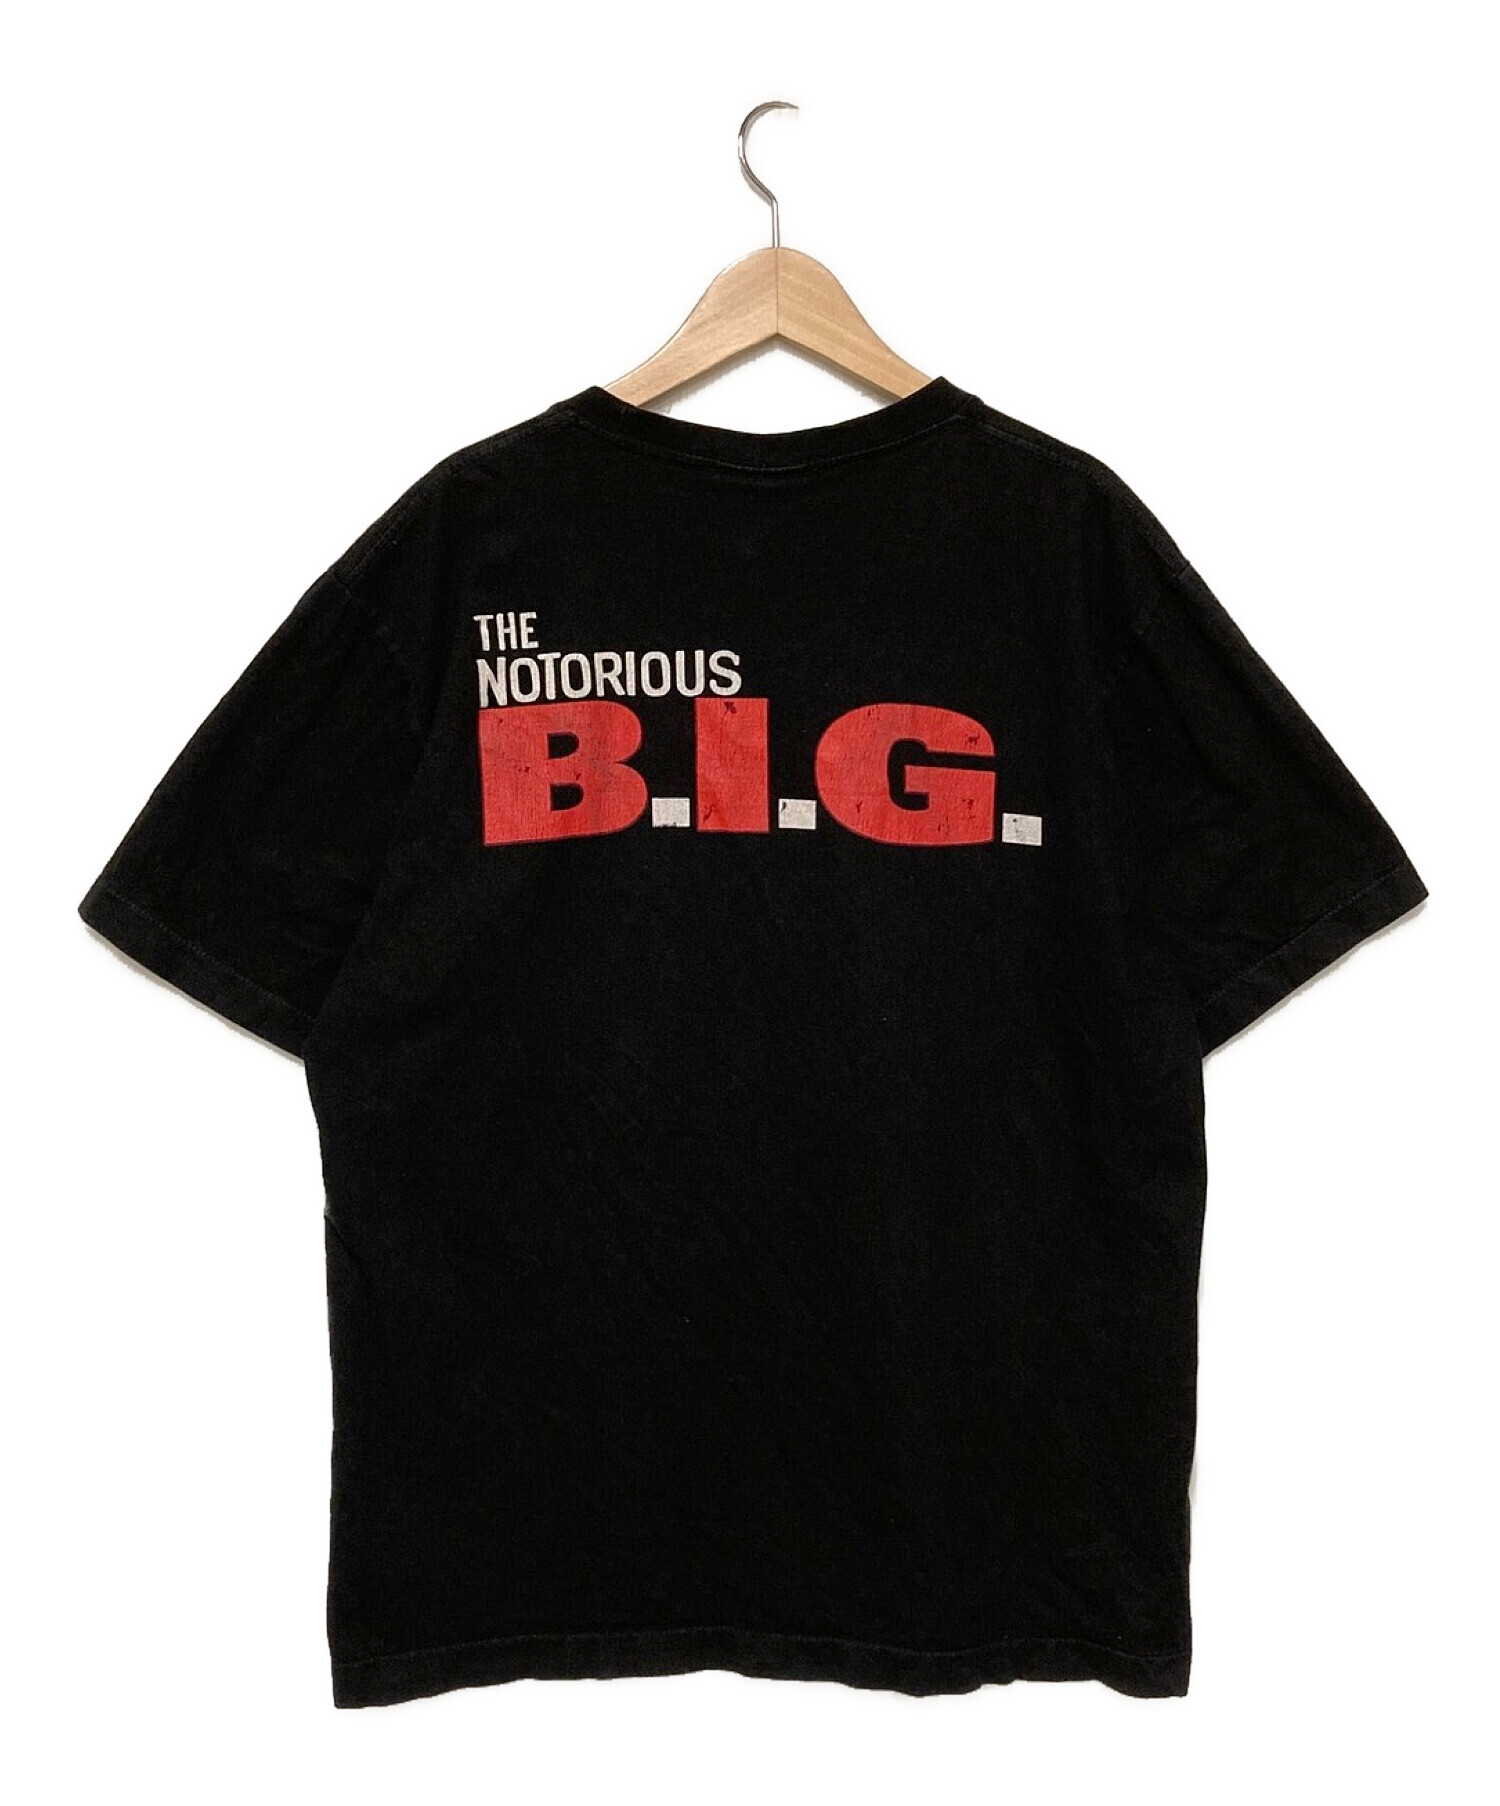 ヴィンテージTシャツ (ヴィンテージTシャツ) ノトーリアス・B.I.G. ビギープリントTシャツ ブラック サイズ:L